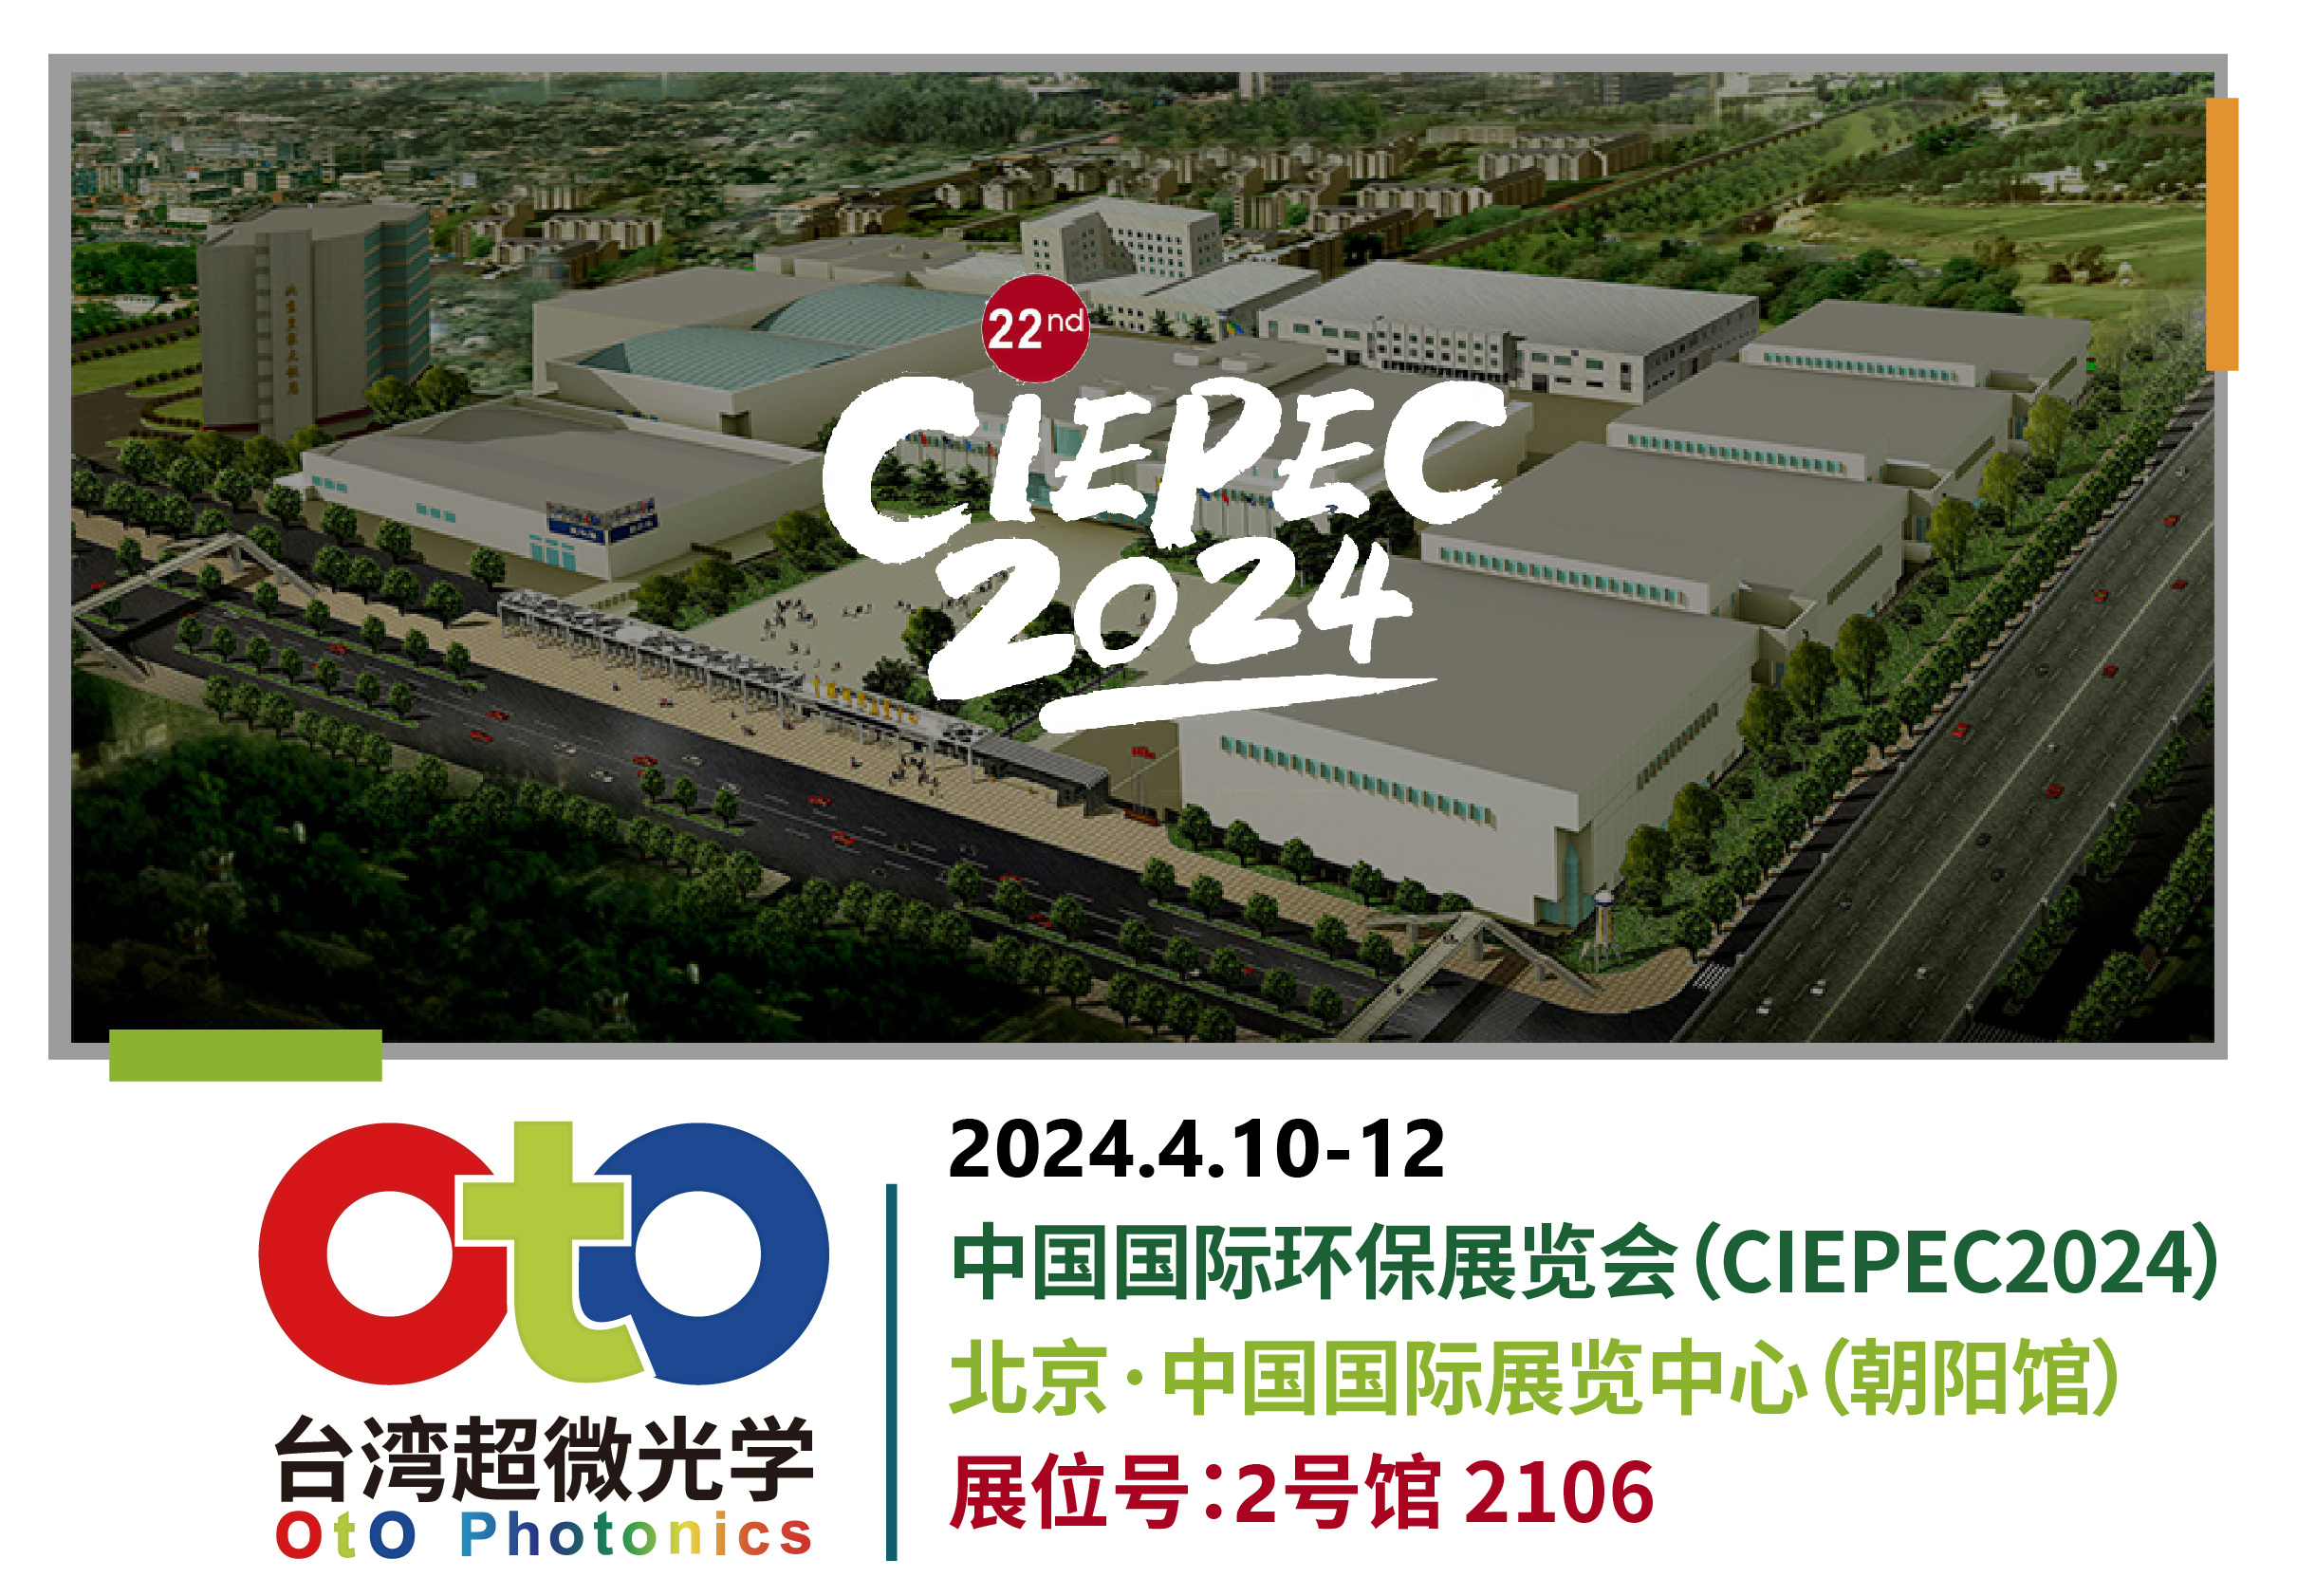 OtO台湾超微光学｜CIEPEC2024 中国国际环保展览会